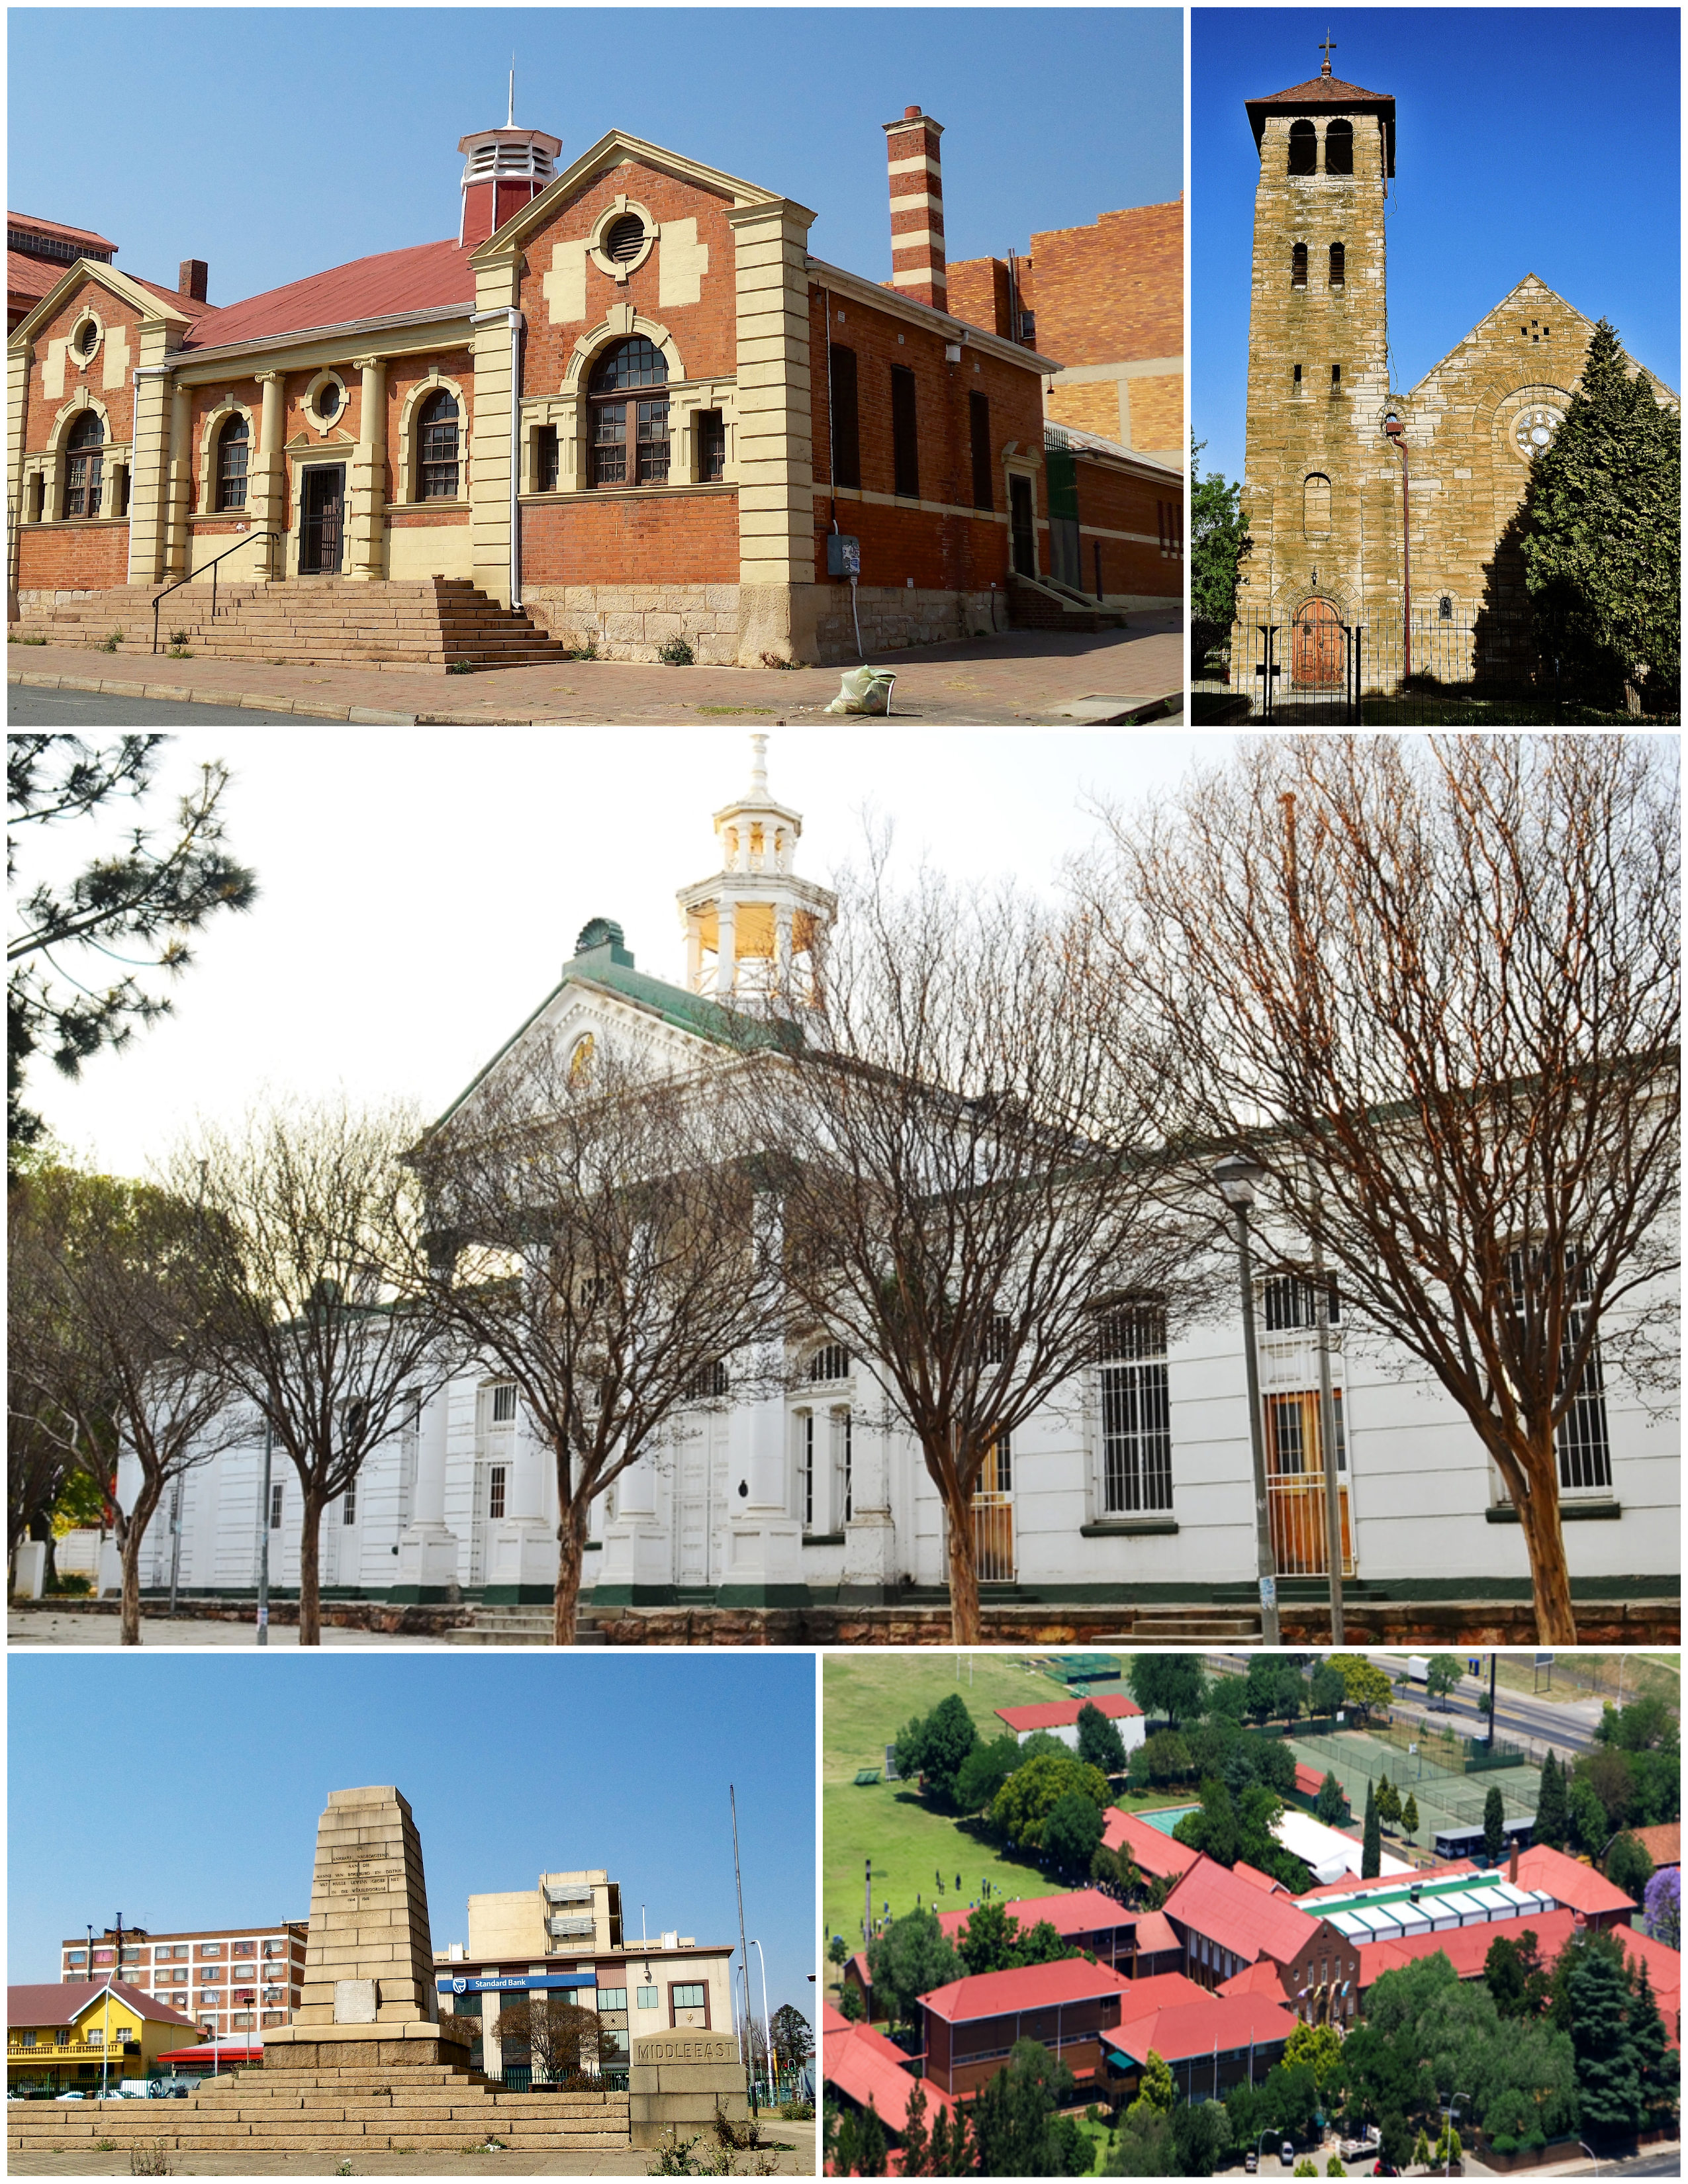 Benoni Johannesburg - Benoni History - Benoni Information